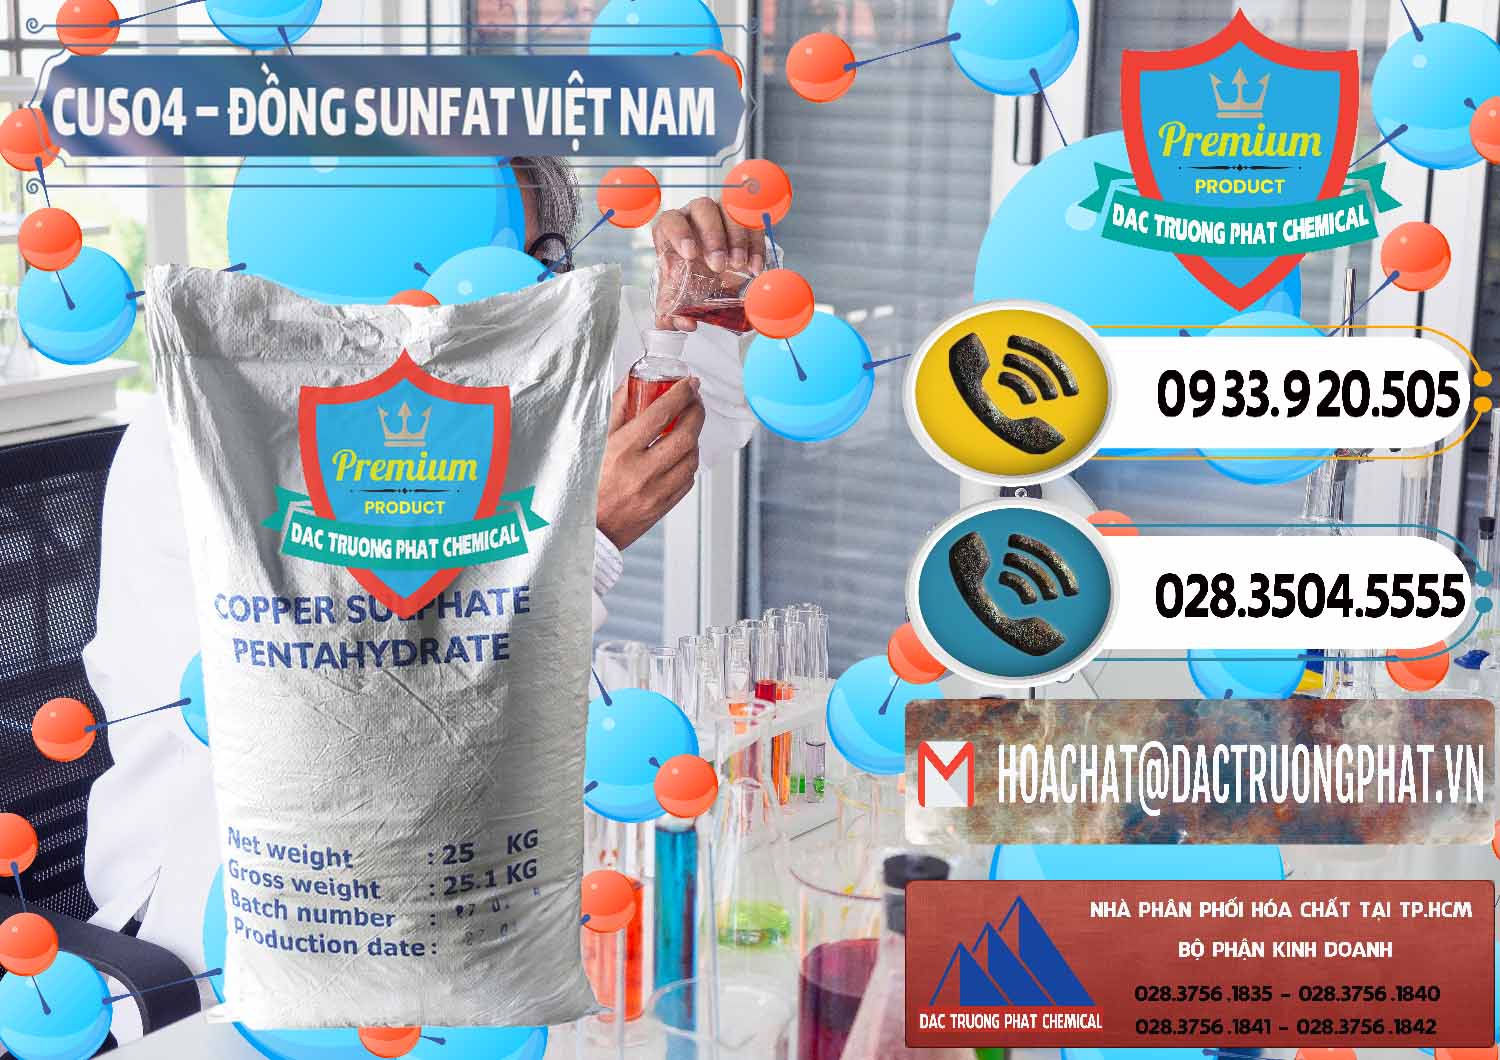 Cty cung cấp - bán CuSO4 – Đồng Sunfat Dạng Bột Việt Nam - 0196 - Cty chuyên phân phối - kinh doanh hóa chất tại TP.HCM - hoachatdetnhuom.vn